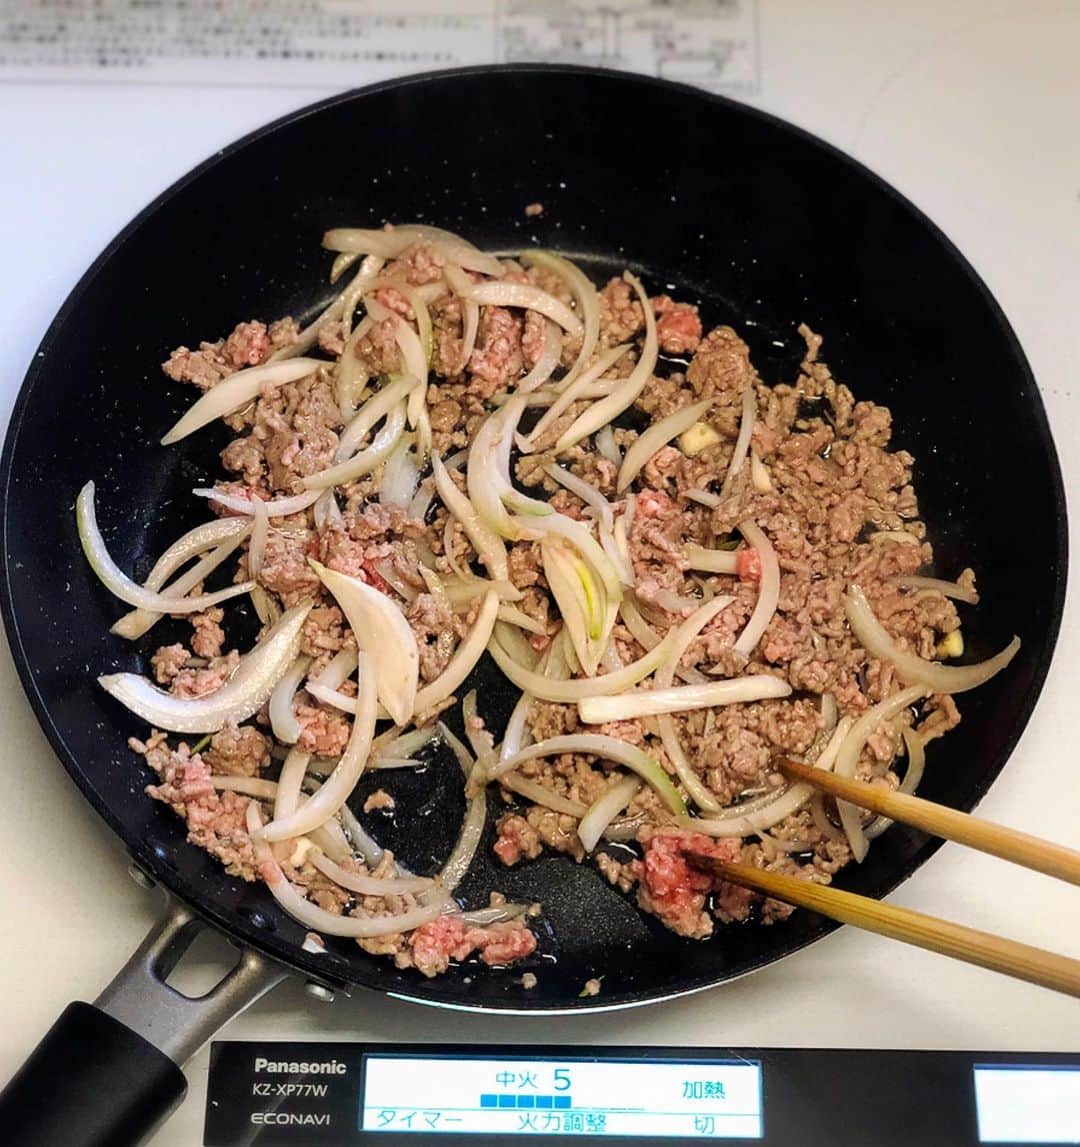 Mizuki【料理ブロガー・簡単レシピ】さんのインスタグラム写真 - (Mizuki【料理ブロガー・簡単レシピ】Instagram)「・﻿ 【レシピ】ーーーーーーーーーー﻿ーー ♡ひき肉とほうれん草の和風パスタ♡﻿ ーーーーーーーーーーーーーーー﻿ーー ﻿ ﻿ おはようございます(*^^*)﻿ ﻿ 今日は簡単パスタレシピ♩﻿ お手軽なひき肉とほうれん草を使った﻿ 和風パスタのご紹介です♡﻿ にんにくを加えて風味よく﻿ 甘辛味で食べやすく仕上げました♩﻿ ﻿ あっという間にできるので﻿ よかったらお試し下さいね(*´艸`)﻿ ﻿ ﻿ ﻿ ーーーーーーーーーーーーーーーーーー﻿ 【2人分】﻿ パスタ...160g﻿ 合びき肉...150g﻿ ほうれん草...1/2束(100g)﻿ 玉ねぎ...1/4個﻿ にんにく...1かけ﻿ サラダ油...大1﻿ 塩こしょう...少々﻿ ●酒・みりん・醤油...各大1.5﻿ ﻿ 1.ほうれん草は4cm長さに切る。玉ねぎとにんにくは薄切りにする。パスタは塩(分量外)を加えた熱湯で、袋の表示時間より1分短く茹でて水気を切る。﻿ 2.フライパンにサラダ油を入れて中火で熱し、ひき肉、玉ねぎ、にんにくを炒める。ひき肉の色が変わったらほうれん草も加え、塩こしょうを振って更に炒める。﻿ 3.ほうれん草がしんなりしたら、パスタと●を加えて炒め合わせる。﻿ ーーーーーーーーーーーーーーーーーー﻿ ﻿ ﻿ 《ポイント》﻿ ♦︎ほうれん草の代わりに小松菜で作っても♩﻿ ﻿ ﻿ ﻿ ﻿ ＿＿＿＿＿＿＿＿＿＿＿＿＿＿＿＿＿﻿ ＿＿＿＿＿＿＿＿＿＿＿＿＿＿＿＿＿﻿ 🎀新刊発売中🎀﻿ 【#ホットケーキミックスのお菓子 】﻿ ﻿ 今回は一冊まるっとホケミスイーツ♩﻿ 普段のおやつから﻿ 特別な日にも使えるレシピを﻿ この一冊に詰め込みました(*^^*)﻿ ホットケーキミックスを使えば﻿ 簡単に本格的なお菓子が作れますよ♡﻿ バレンタインにもご活用下さいませ♩﻿ ﻿ 🔹ハイライトにリンクあります♩🔹﻿ ＿＿＿＿＿＿＿＿＿＿＿＿＿＿＿＿＿﻿ ＿＿＿＿＿＿＿＿＿＿＿＿＿＿＿＿＿﻿ ﻿ ﻿ ﻿ 【お知らせ】﻿ ストーリーズでは一日数回﻿ 別レシピをご紹介しております(*^^*)﻿ ＊コメントは最新の投稿に下さいますよう﻿ お願い致しますm(_ _)m﻿ ﻿ ﻿ ﻿ #ブログ更新しました﻿ ブログはプロフ画面のリンクよりご覧下さい↓﻿ @mizuki_31cafe﻿ 【Mizuki公式ラインブログ】﻿ https://lineblog.me/mizuki_official/﻿ ﻿ ﻿ ﻿ ﻿ #パスタ#ひき肉#ほうれん草#和風パスタ#スパゲティ#Mizuki#簡単レシピ#時短レシピ#節約レシピ#料理#レシピ#フーディーテーブル#おうちごはん#おうちカフェ#デリスタグラマー#料理好きな人と繋がりたい#料理ブロガー#おうちごはんlover#器#マカロニメイト#ブログ﻿ #foodpic#follow#cooking#recipe#lin_stagrammer#ひき肉とほうれん草の和風パスタm」2月14日 7時23分 - mizuki_31cafe